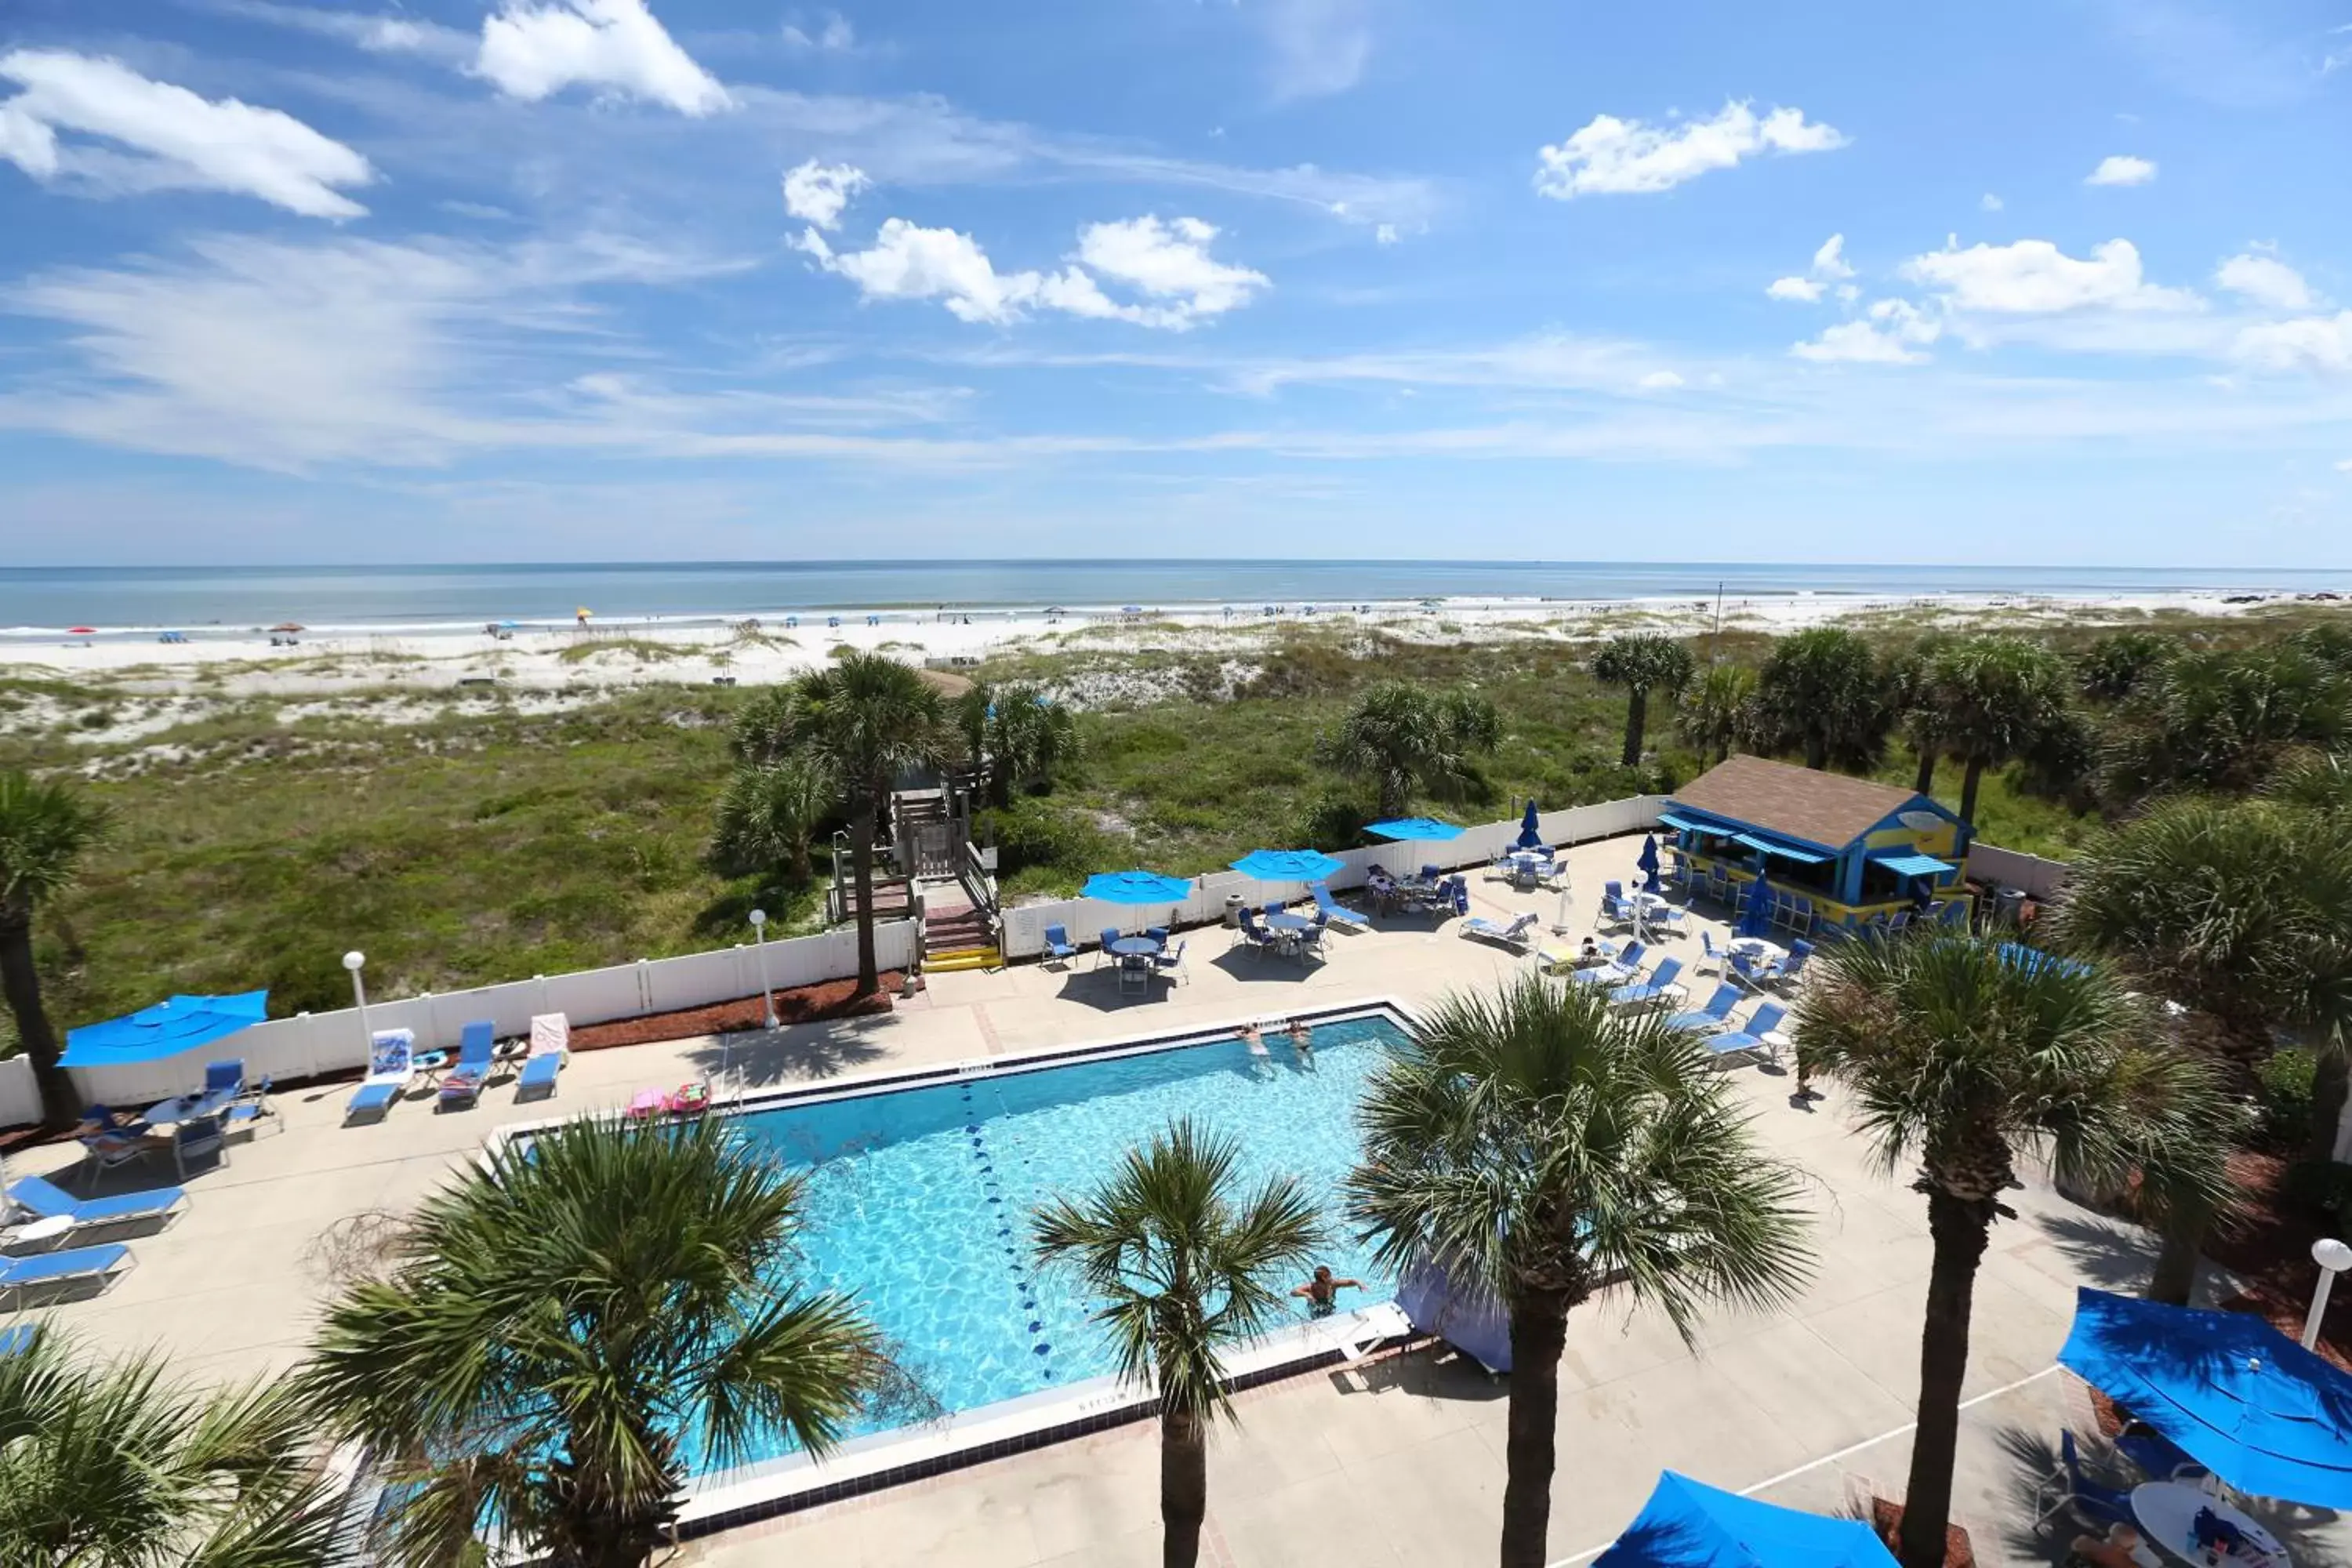 Pool View in Guy Harvey Resort on Saint Augustine Beach